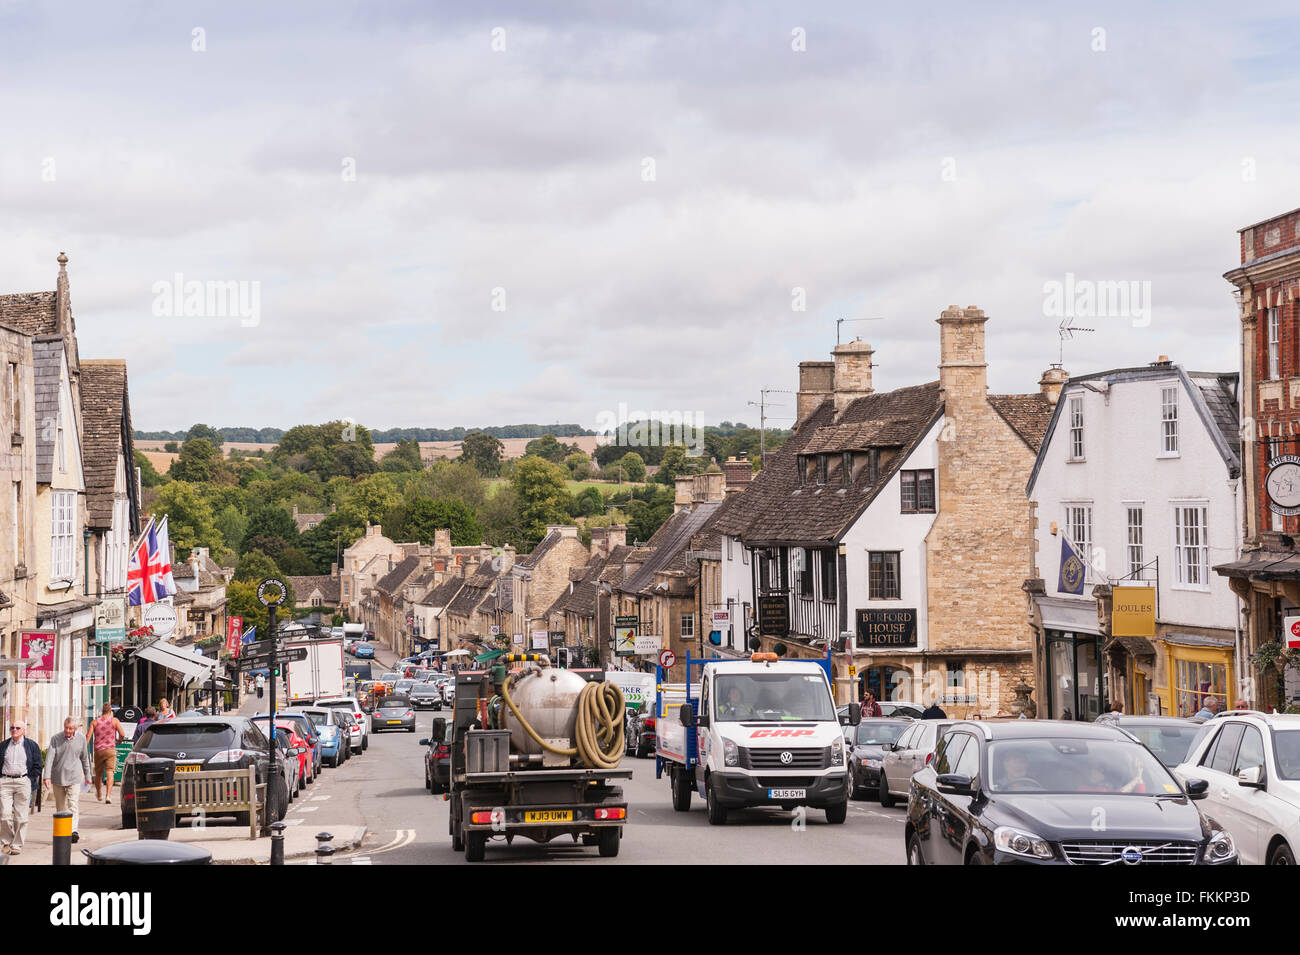 Die hübschen Cotswold Stadt Burford, Oxfordshire, England, Großbritannien, Uk Stockfoto